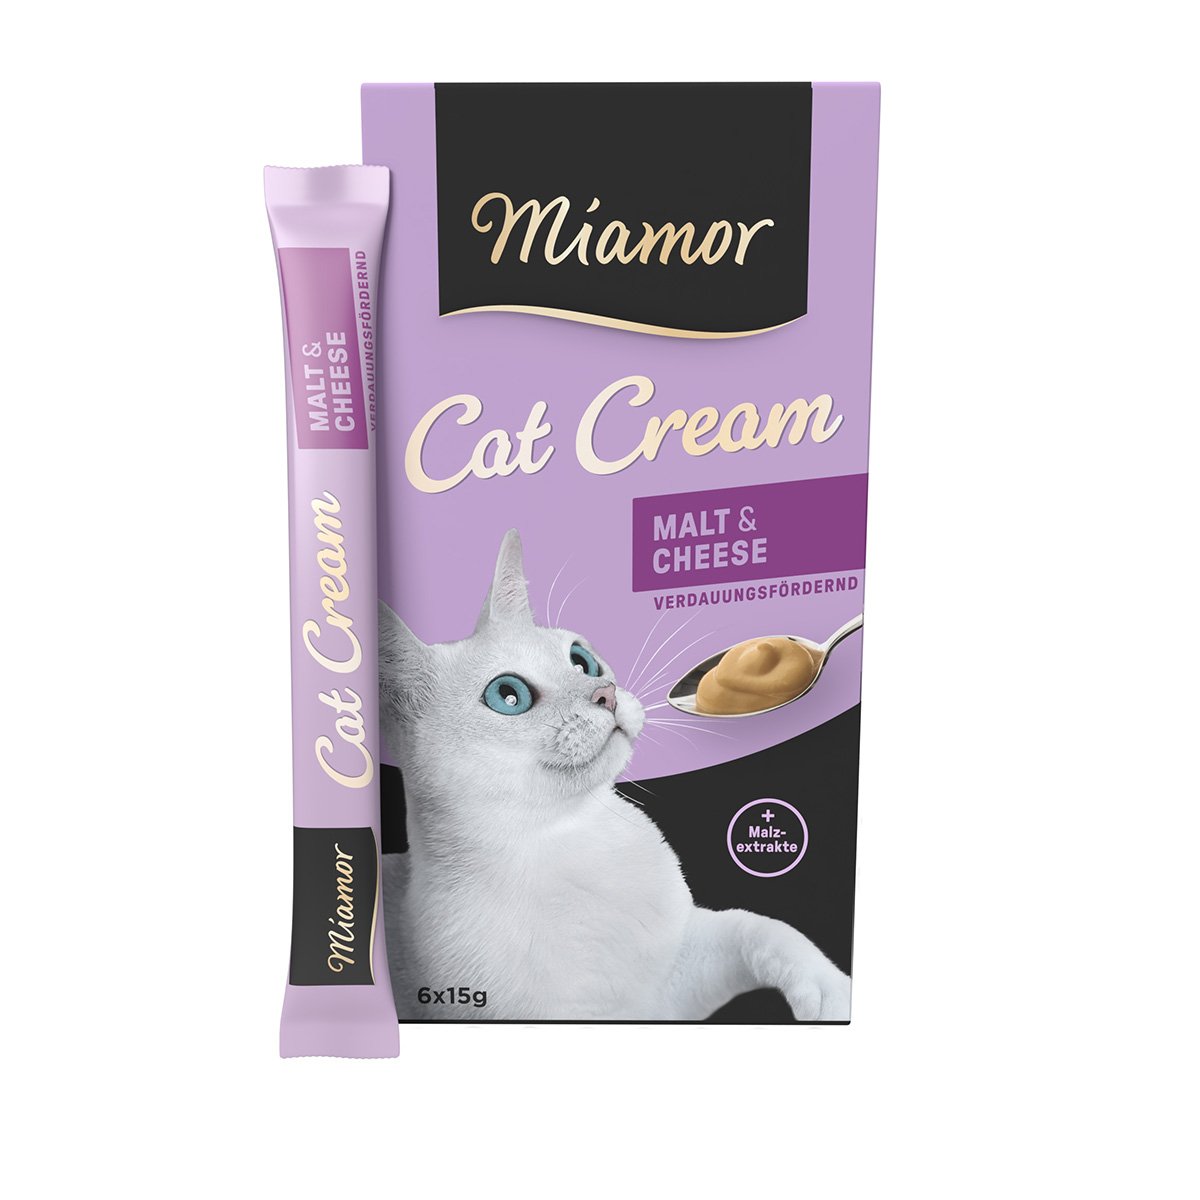 Miamor Cat Cream Malt & Cheese 6x15g von Miamor